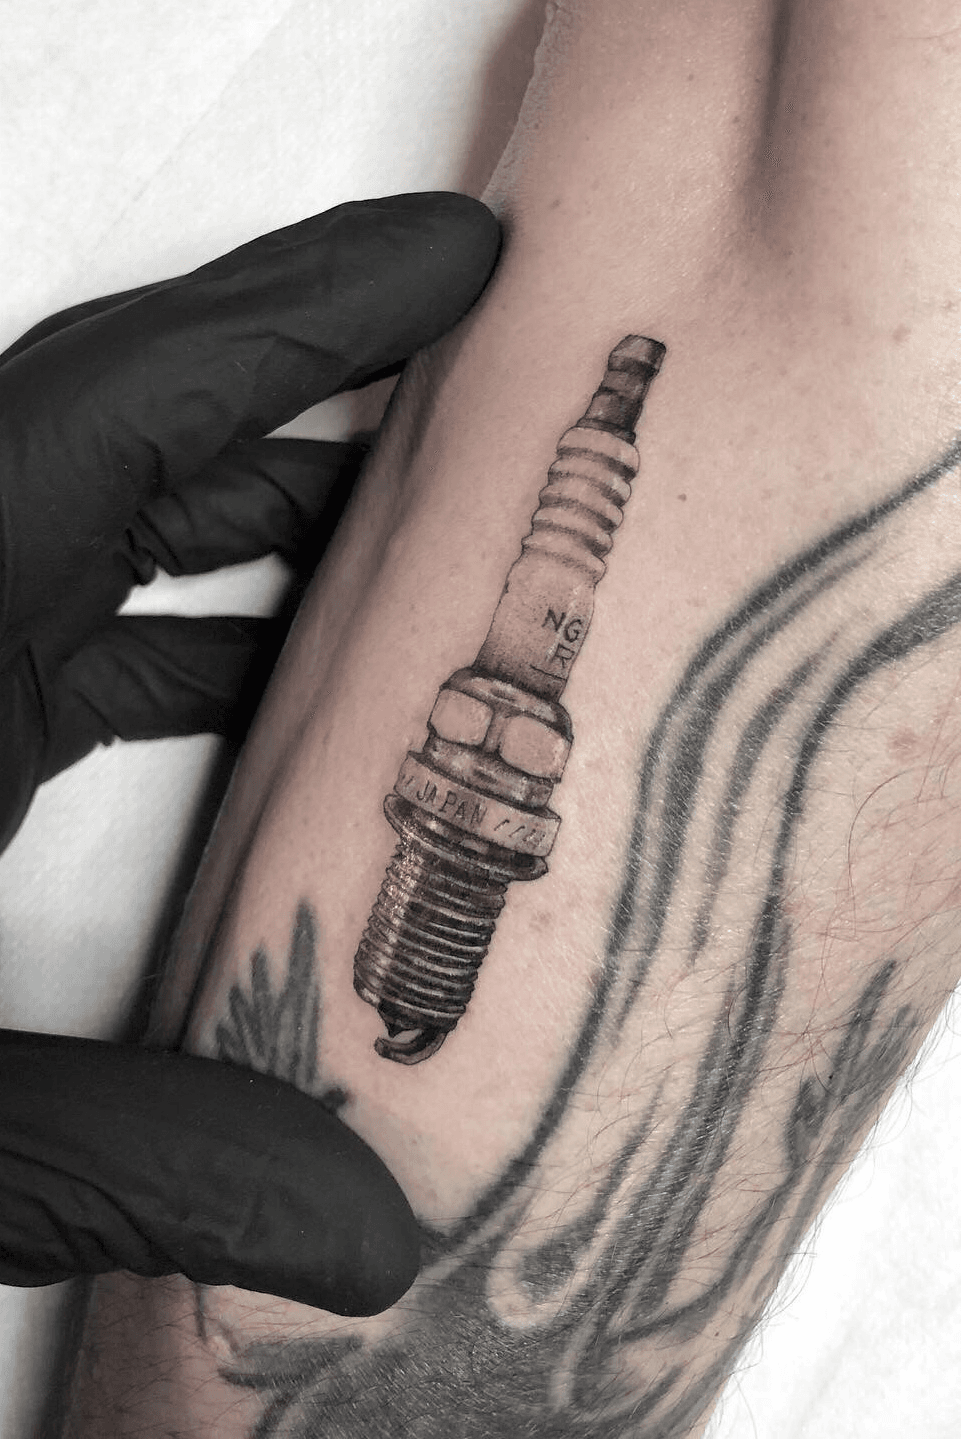 The Spark Plug Tattoo |